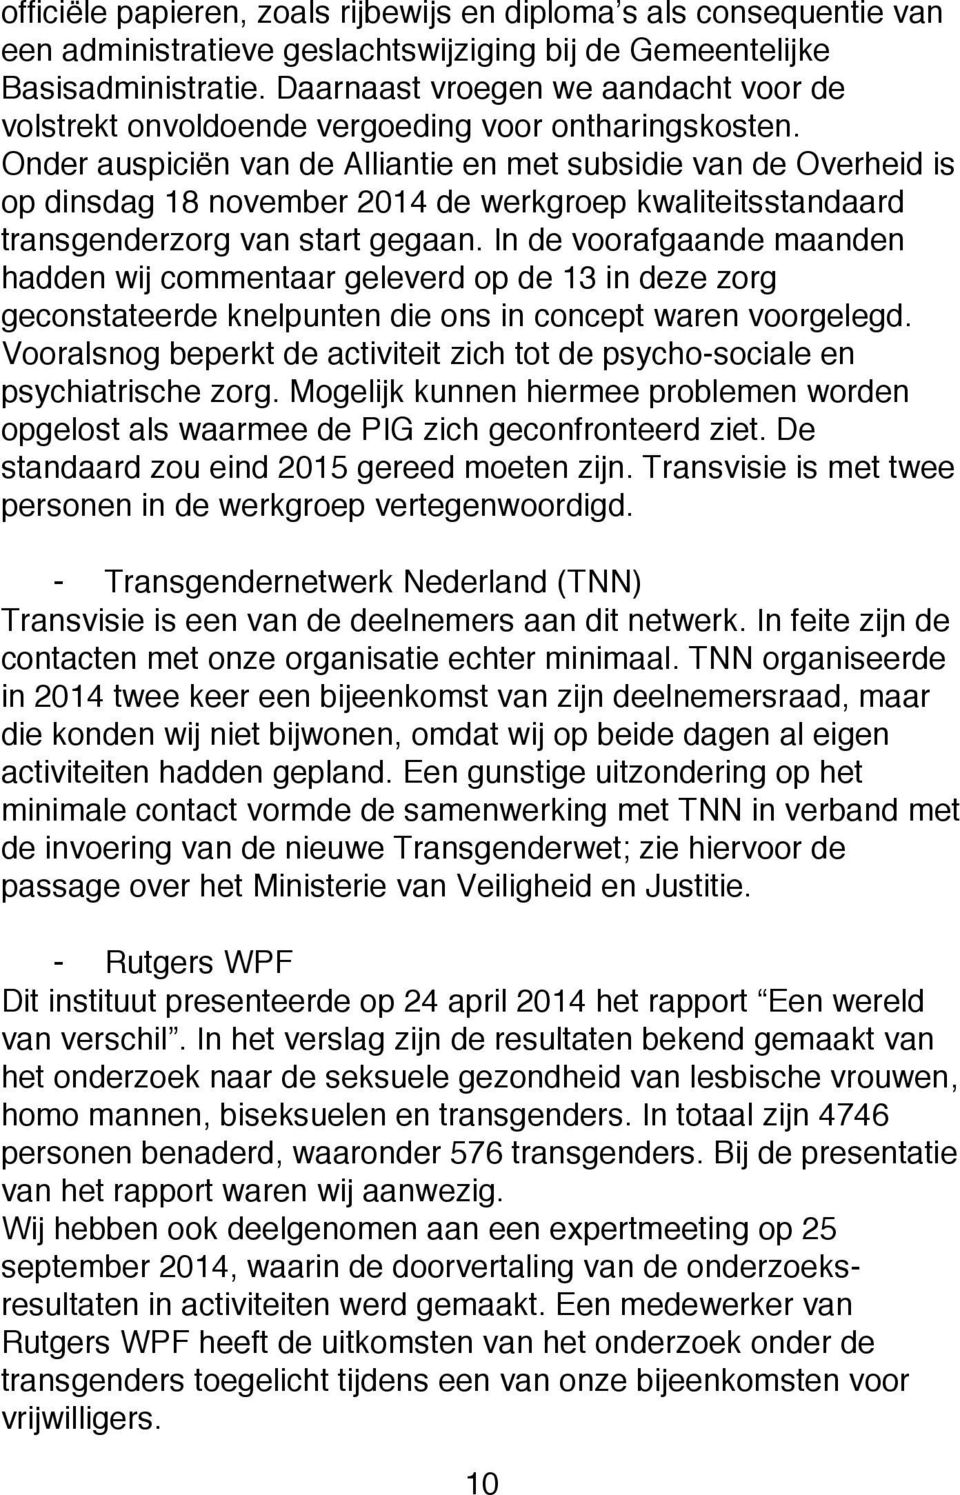 Onder auspiciën van de Alliantie en met subsidie van de Overheid is op dinsdag 18 november 2014 de werkgroep kwaliteitsstandaard transgenderzorg van start gegaan.